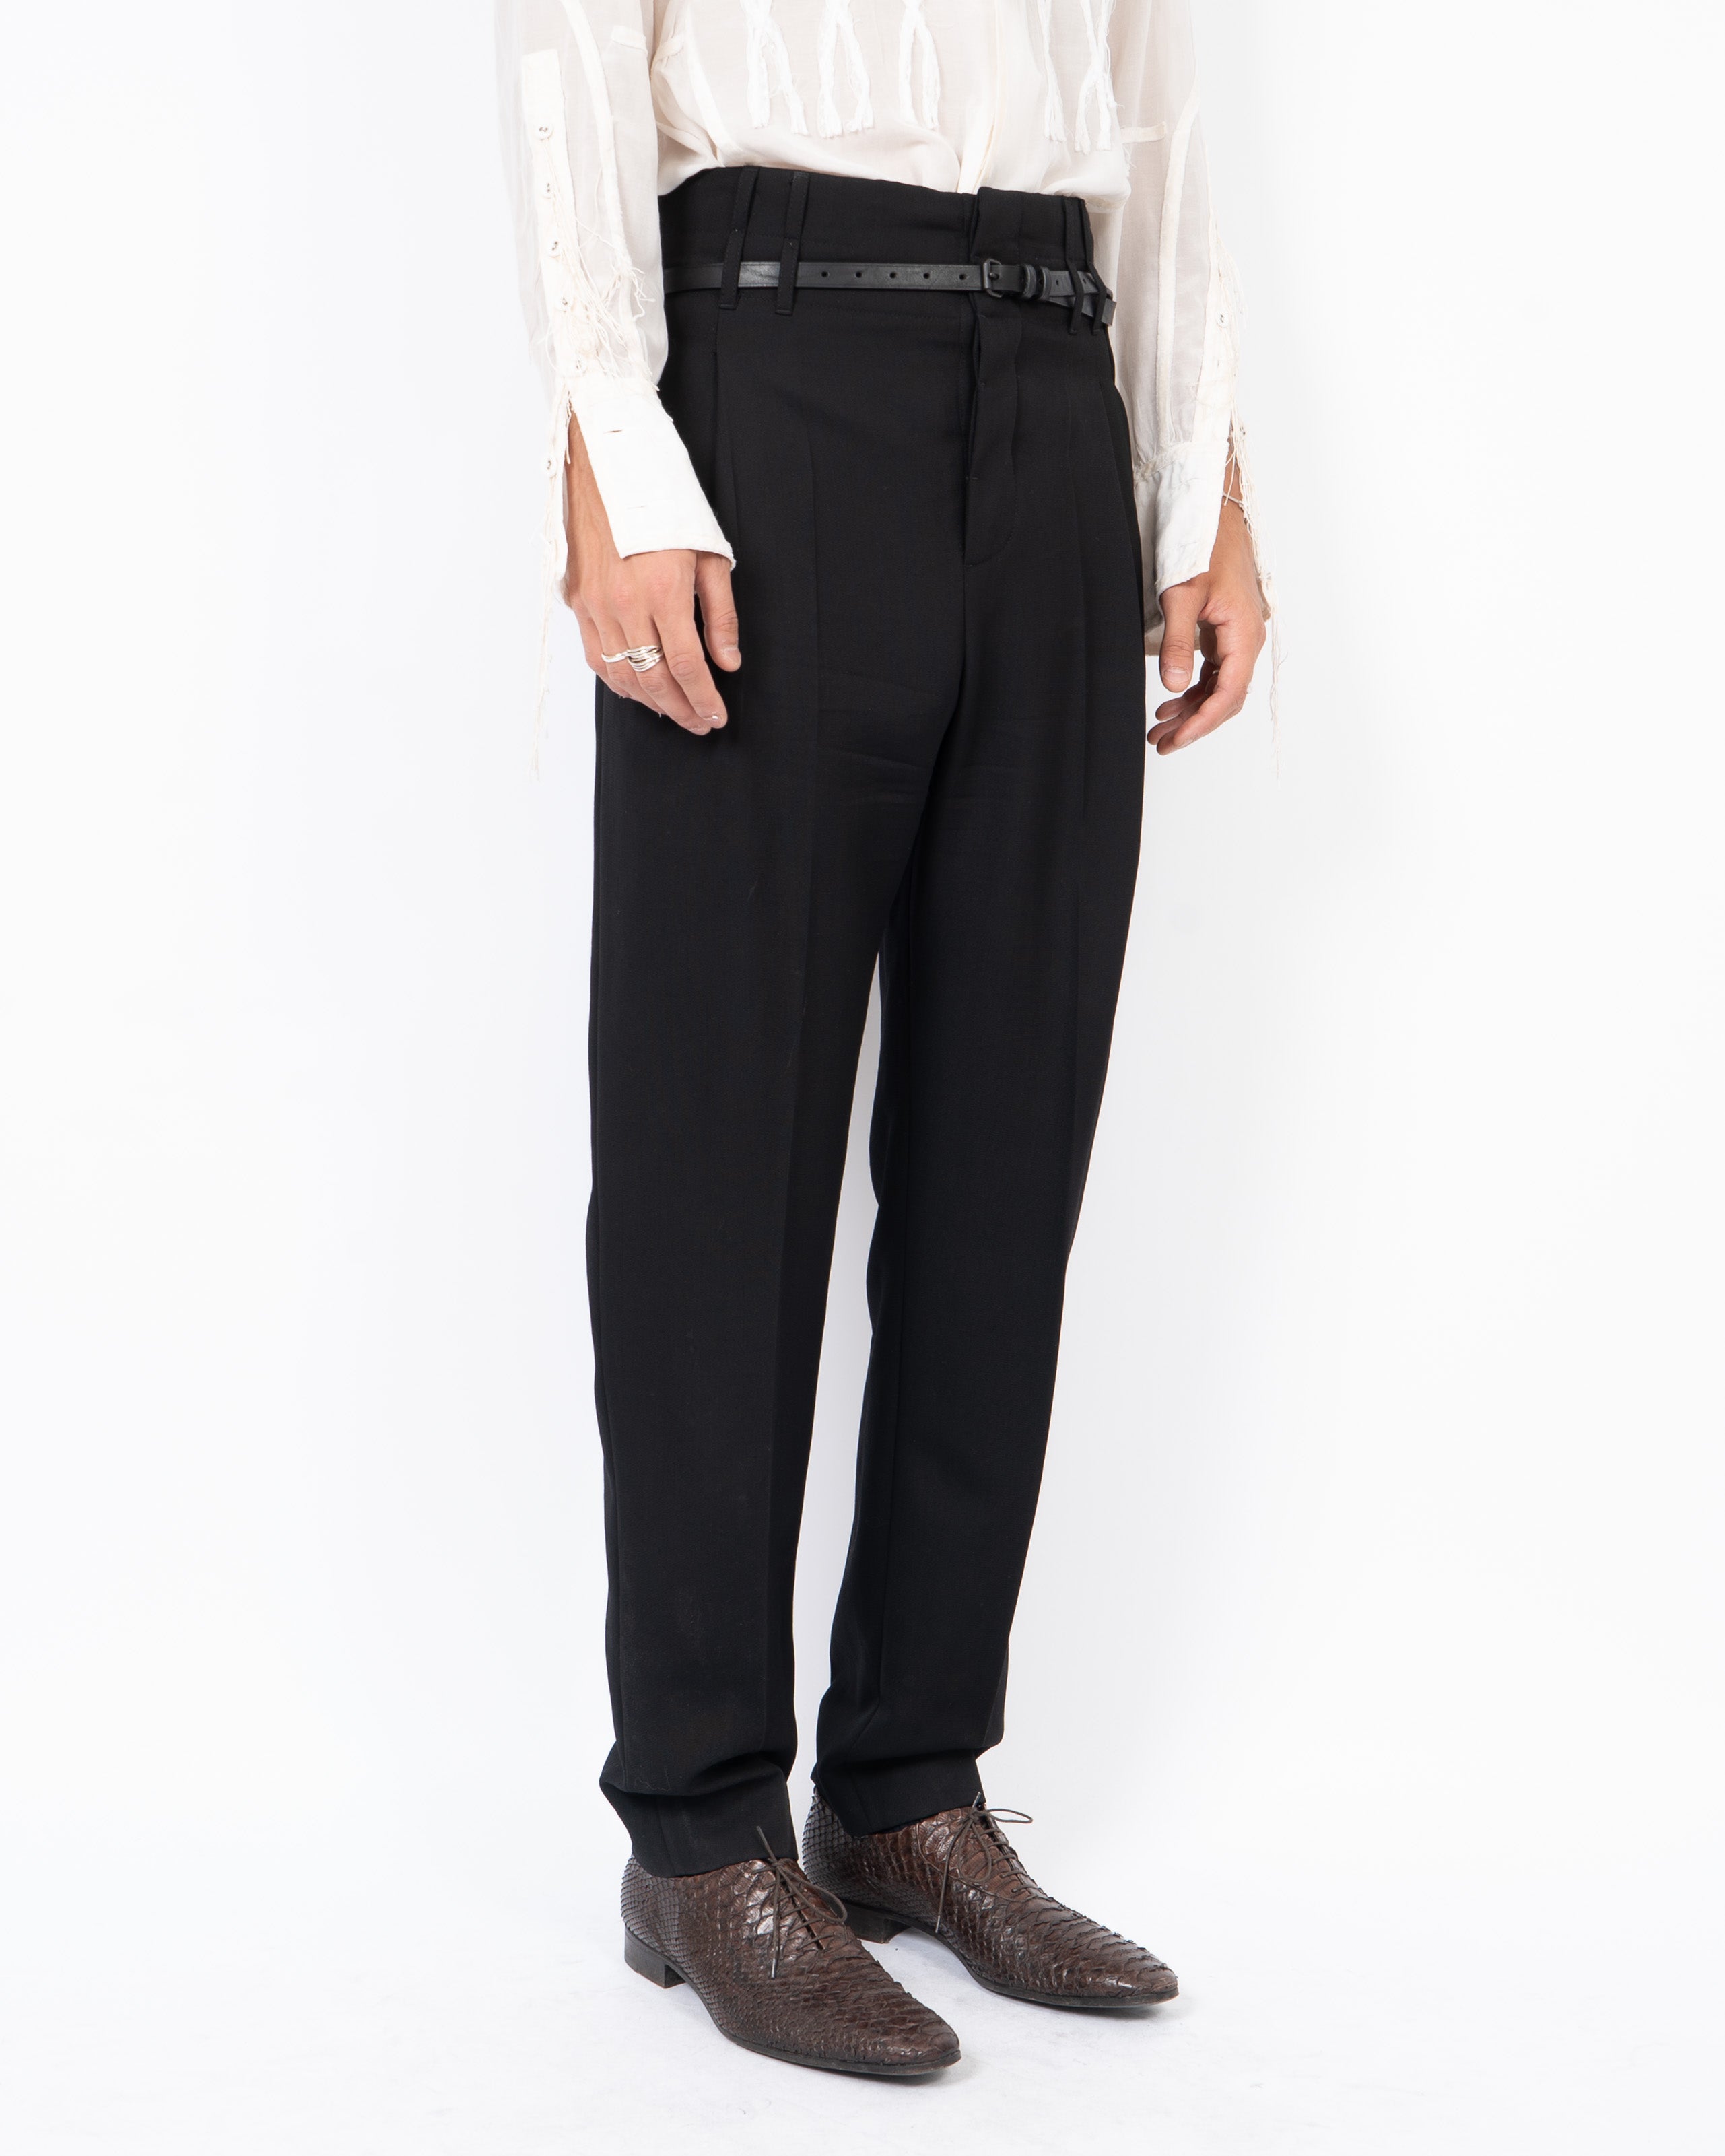 SS18 Calder Black Highwaisted Trousers Sample